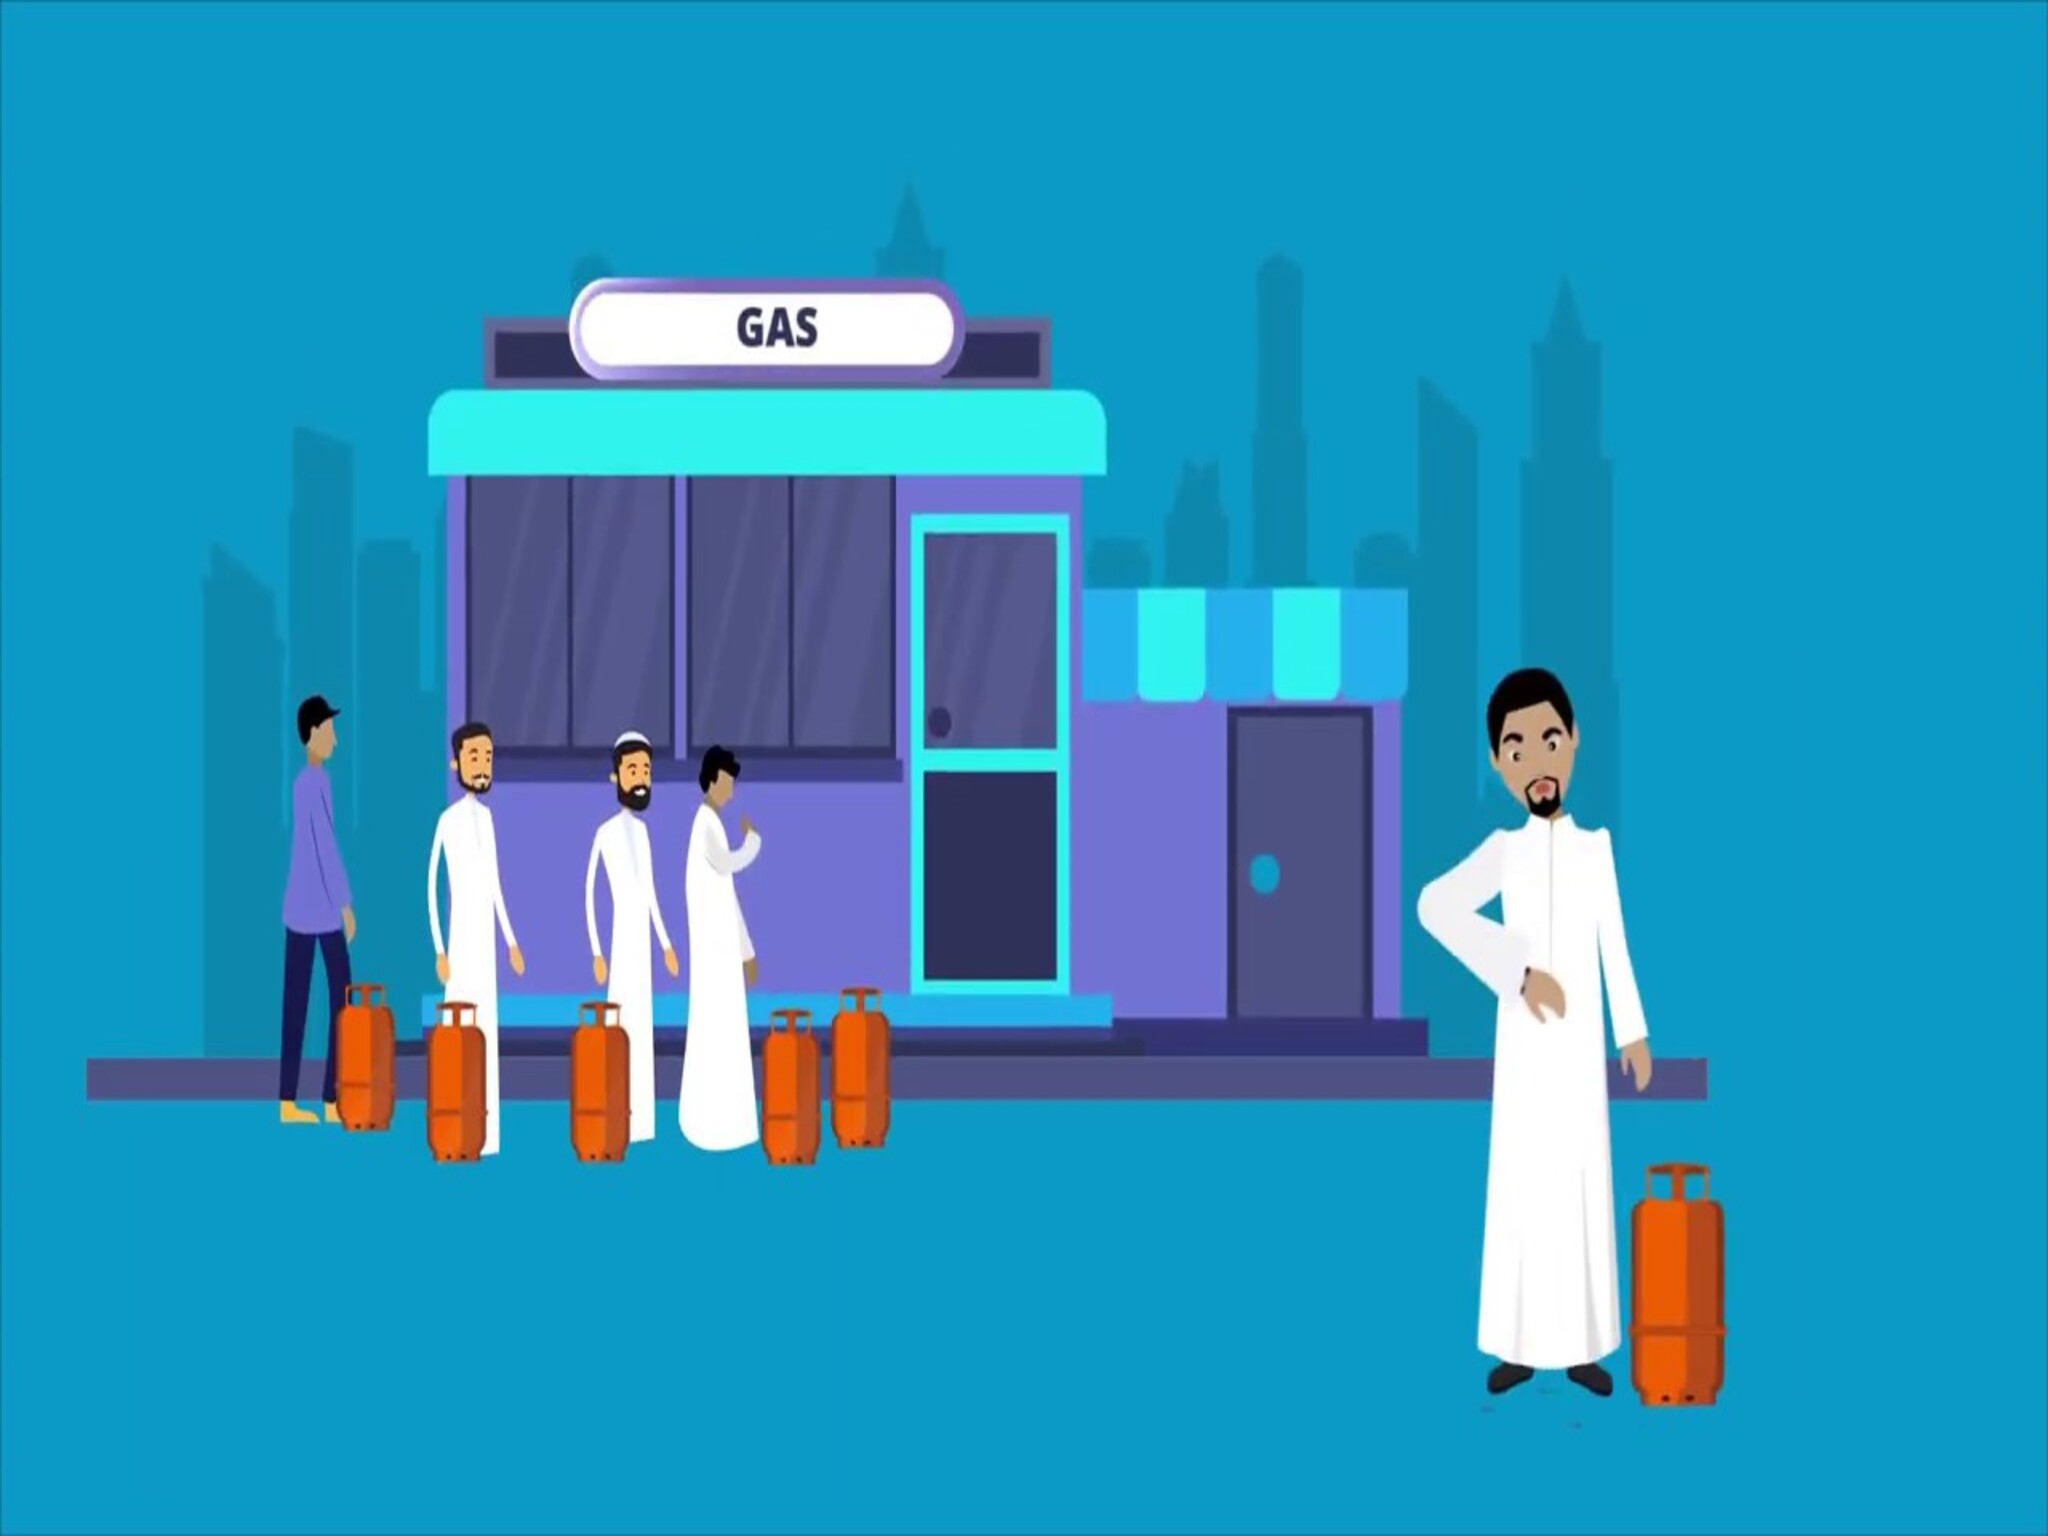 مميزات تطبيق غاز الرياض 1446هـ ... (البوابة الذكية لخدمات الغاز)